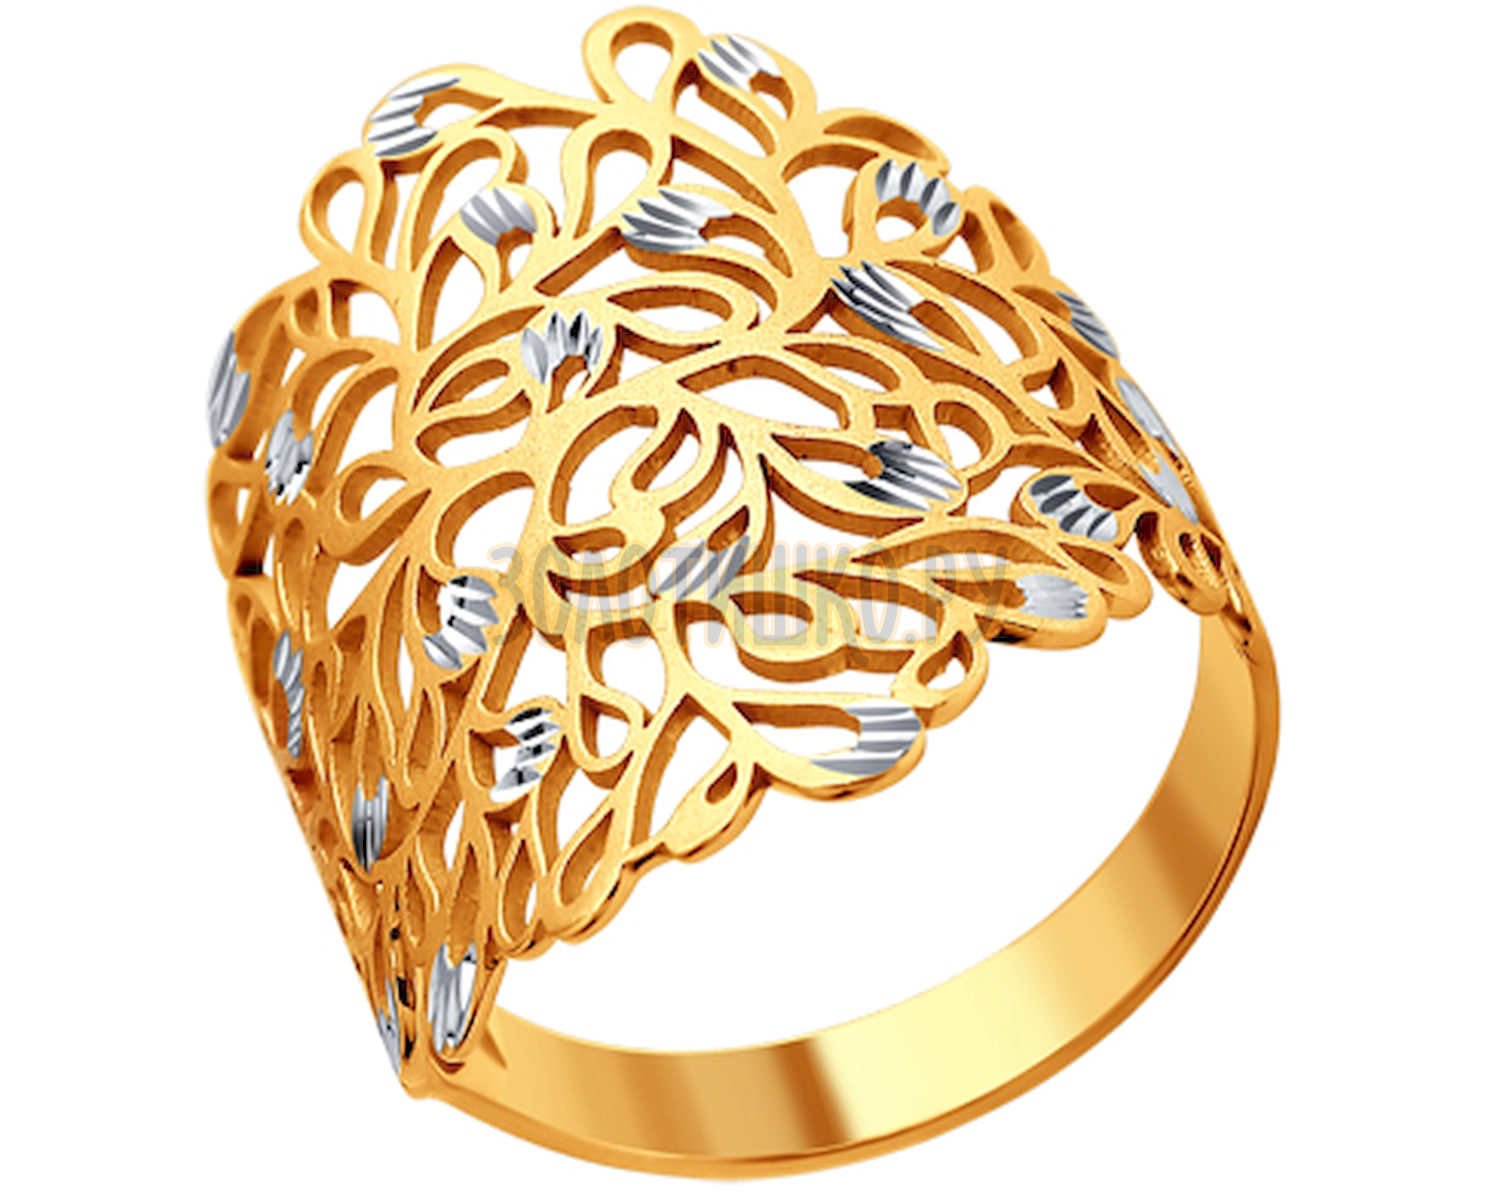 Ажурные золотые кольца. SOKOLOV кольцо «Лис» 93010668. Золотые кольца 585 без камней. Золотые ажурные кольца в золото 585. Золотые кольца женские без камней из золота 585.